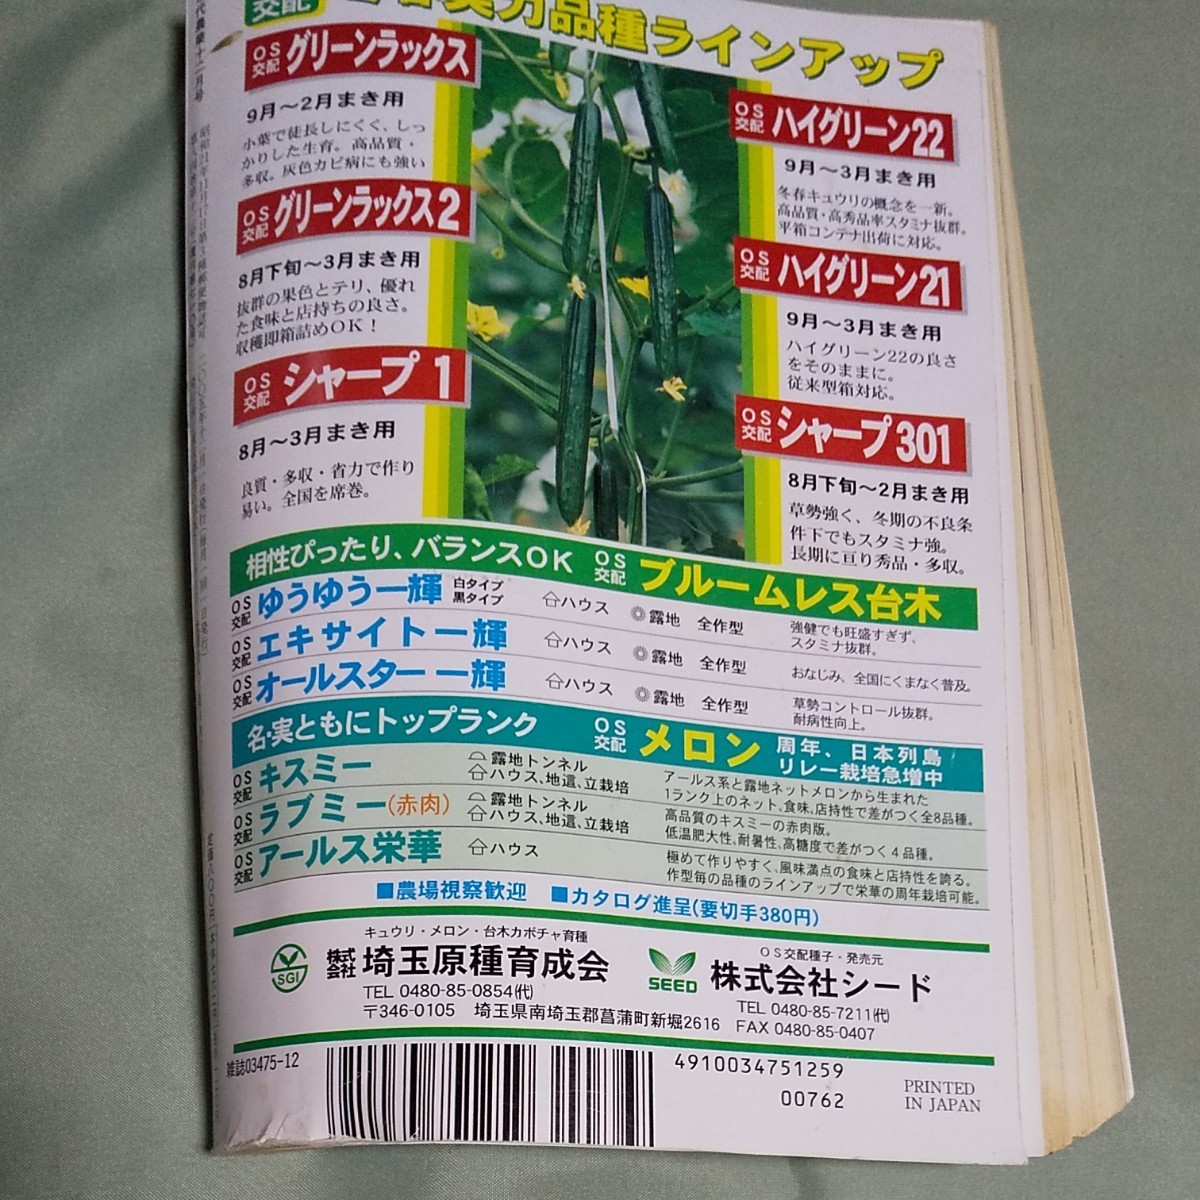 現代農業 本 雑誌 2005年 12月 農具列伝 米で米粉お米が売れる時代 趣味園芸 雑学 教科書 農業 ガーデニング